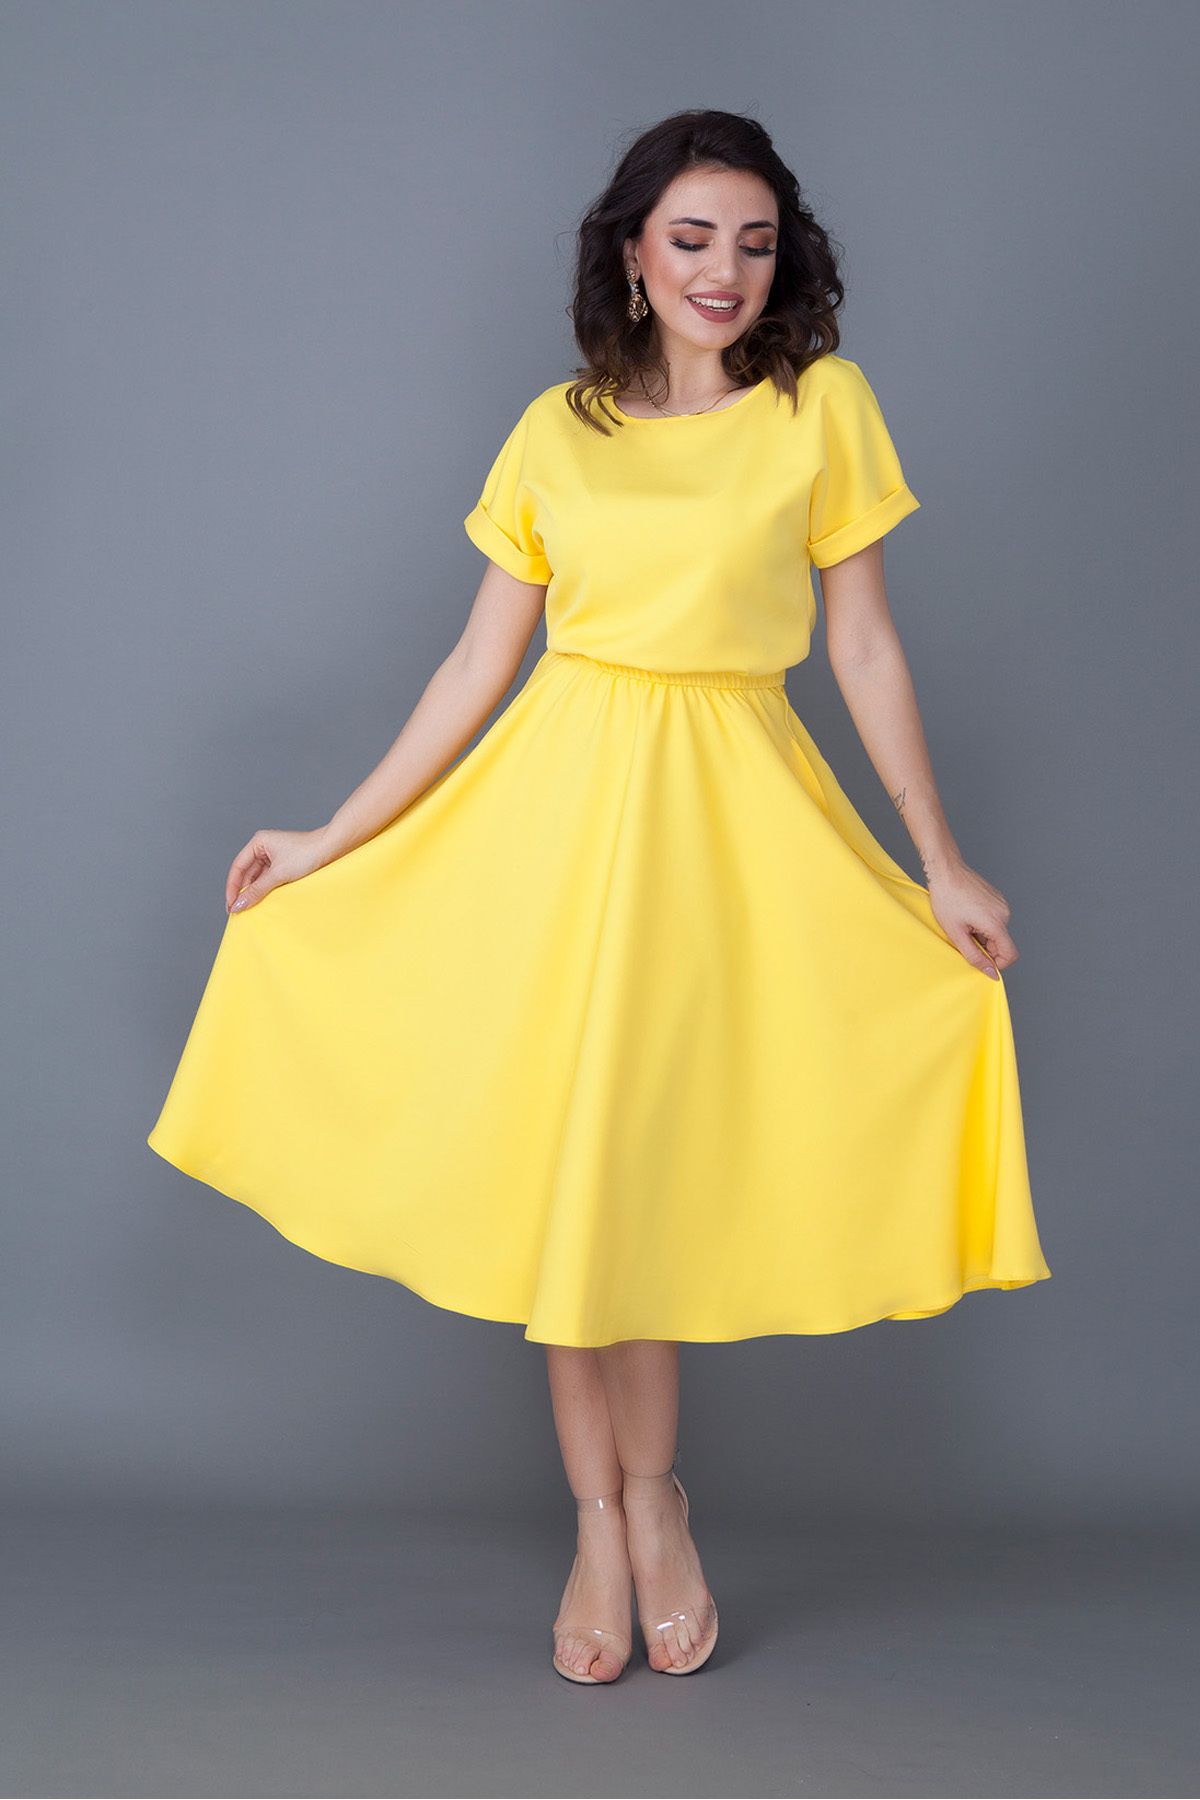 modastation Kadın Sarı Cepli Atlas Krep Dökümlü Yarasa Kol Beli Lastikli Midi Boy Büyük Beden Elbise